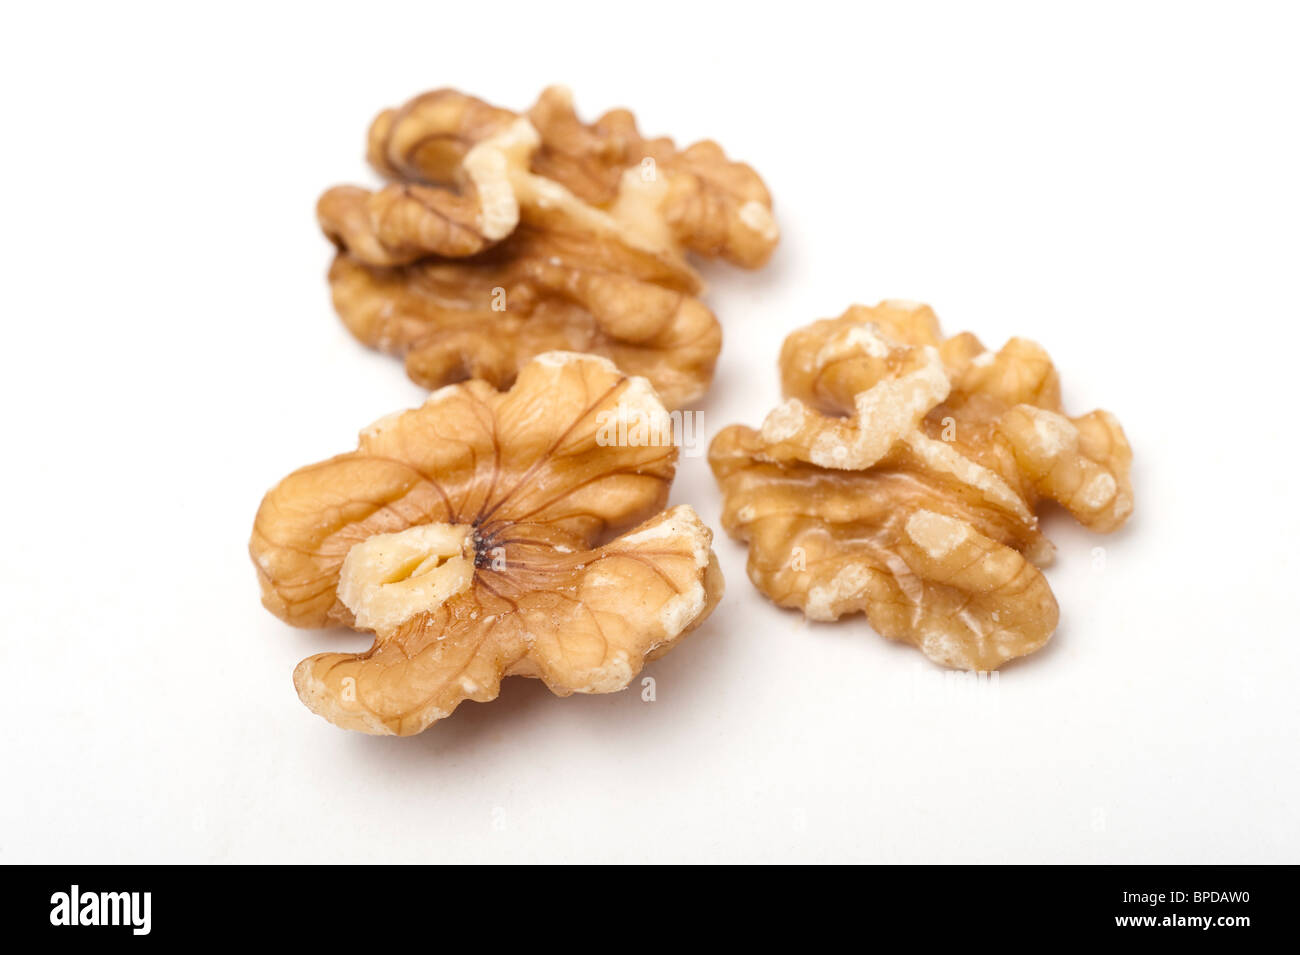 Roasted shelled walnuts On white Background Stock Photo